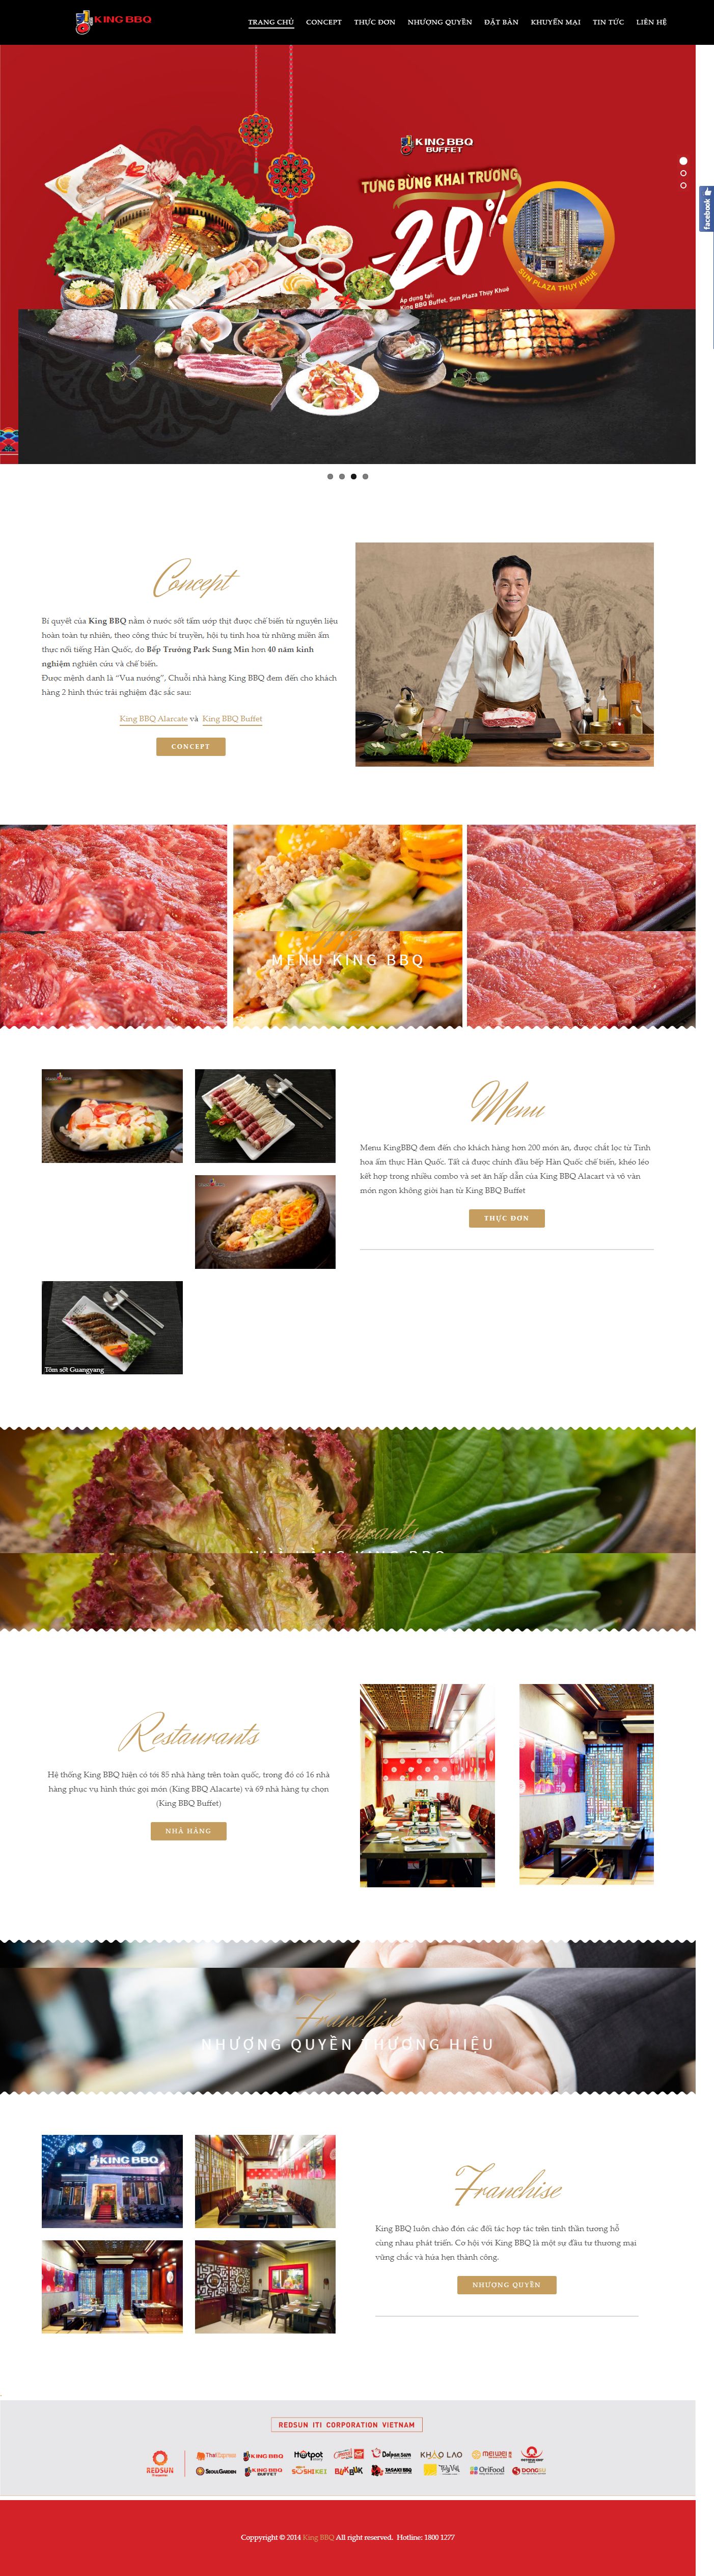 Thiết kế Website nhà hàng - kingbbq.com.vn